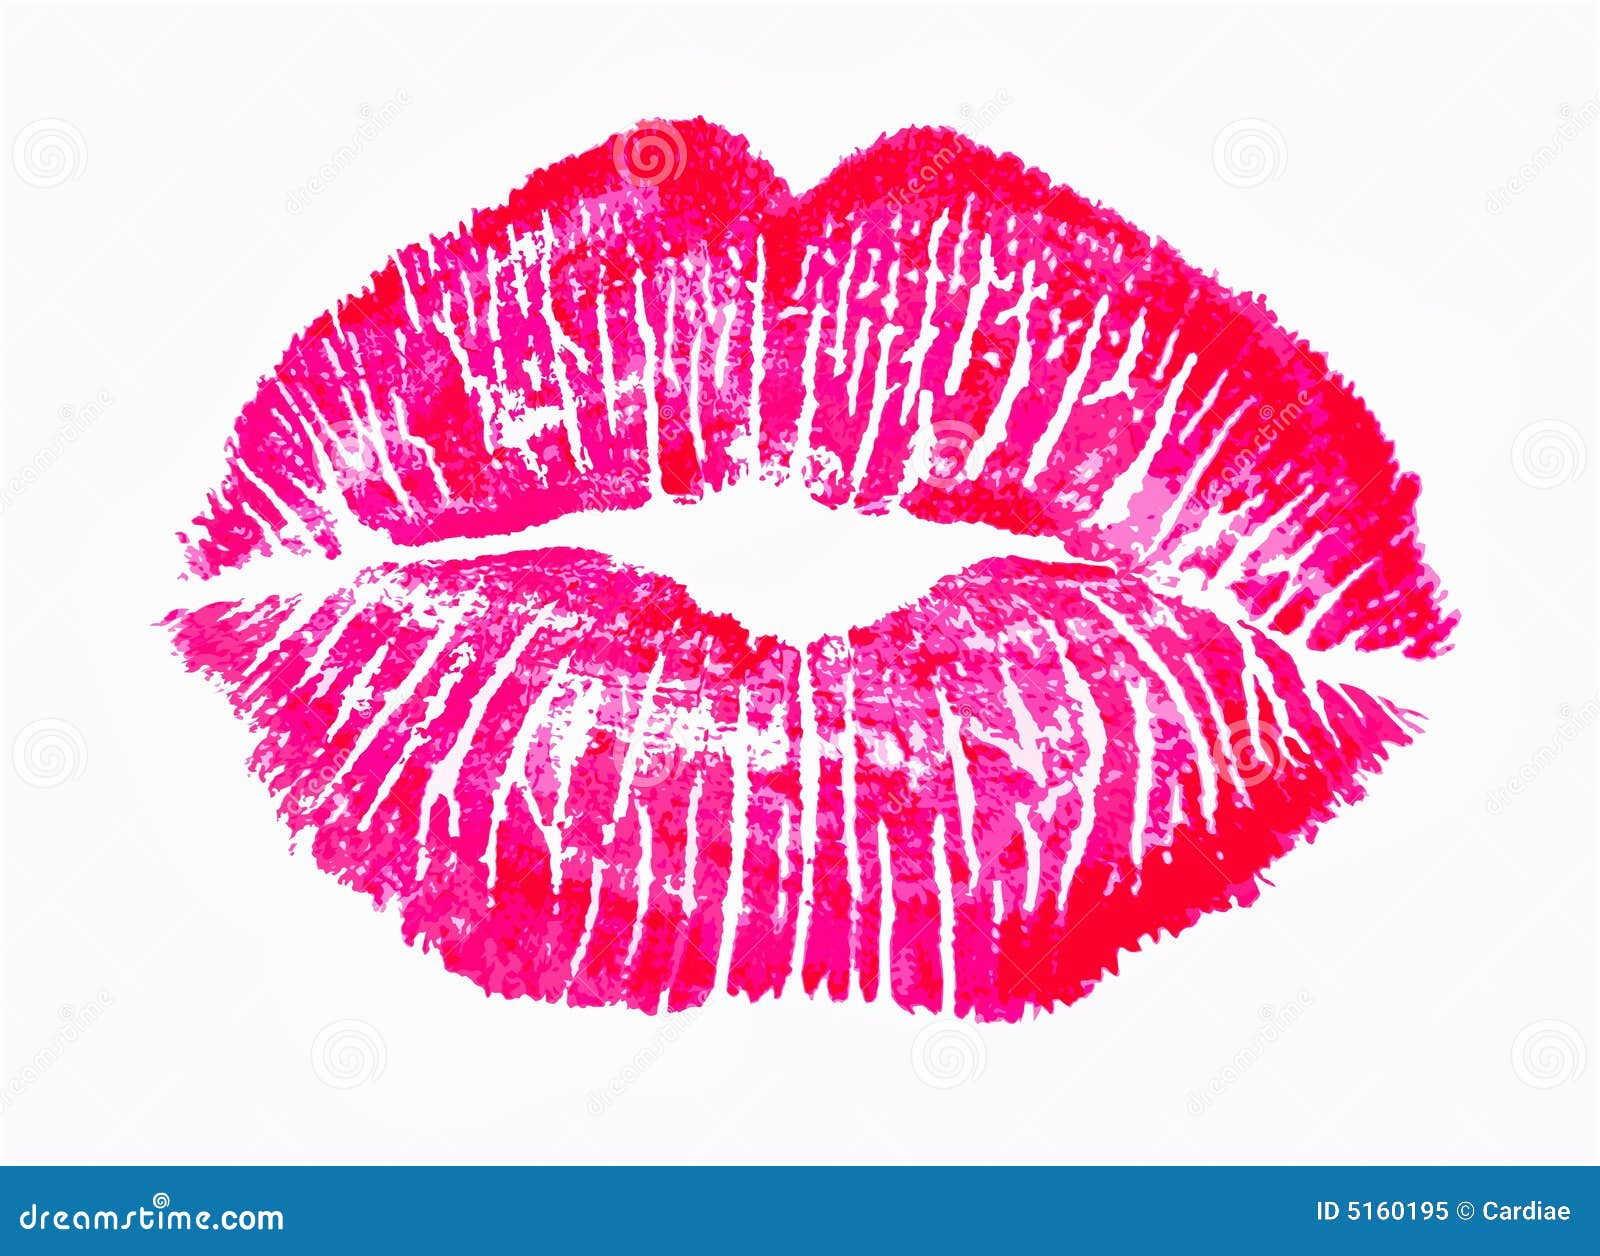 pink kiss lips lip print 